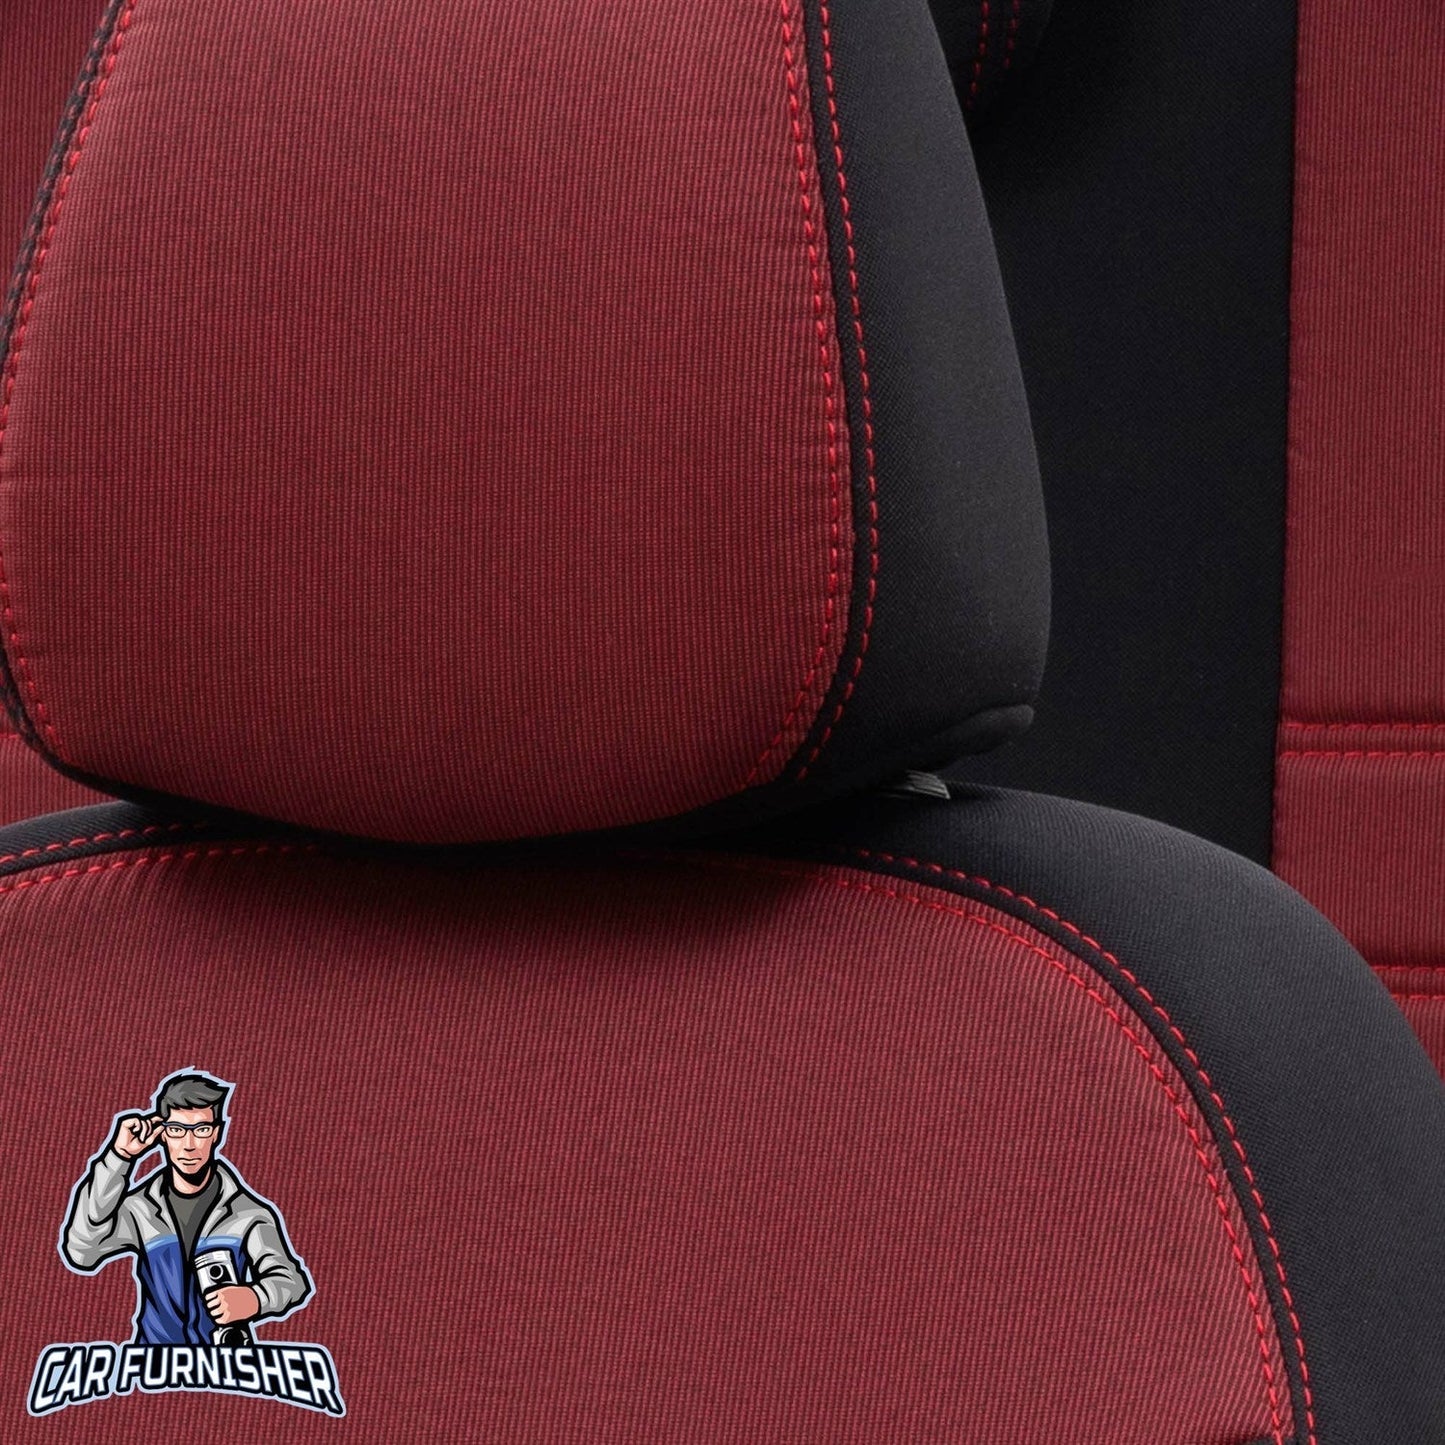 Fiat Palio Seat Covers Original Jacquard Design Red Jacquard Fabric